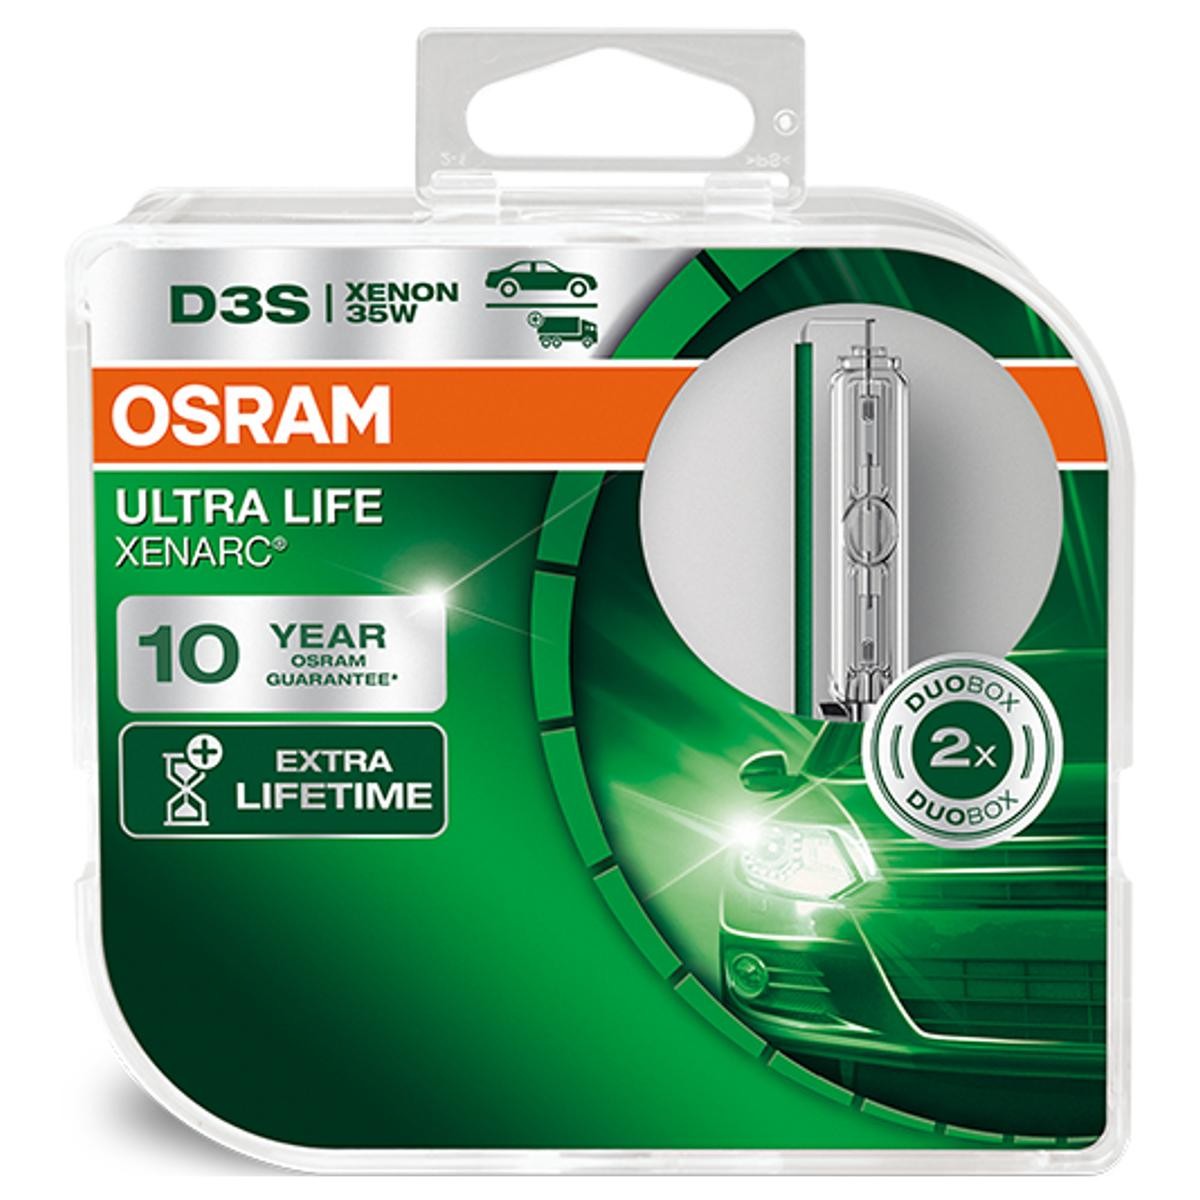 66340ULT-HCB OSRAM XENARC ULTRA LIFE D3S 42V 35W 4300K Xénon Ampoule,  projecteur longue portée